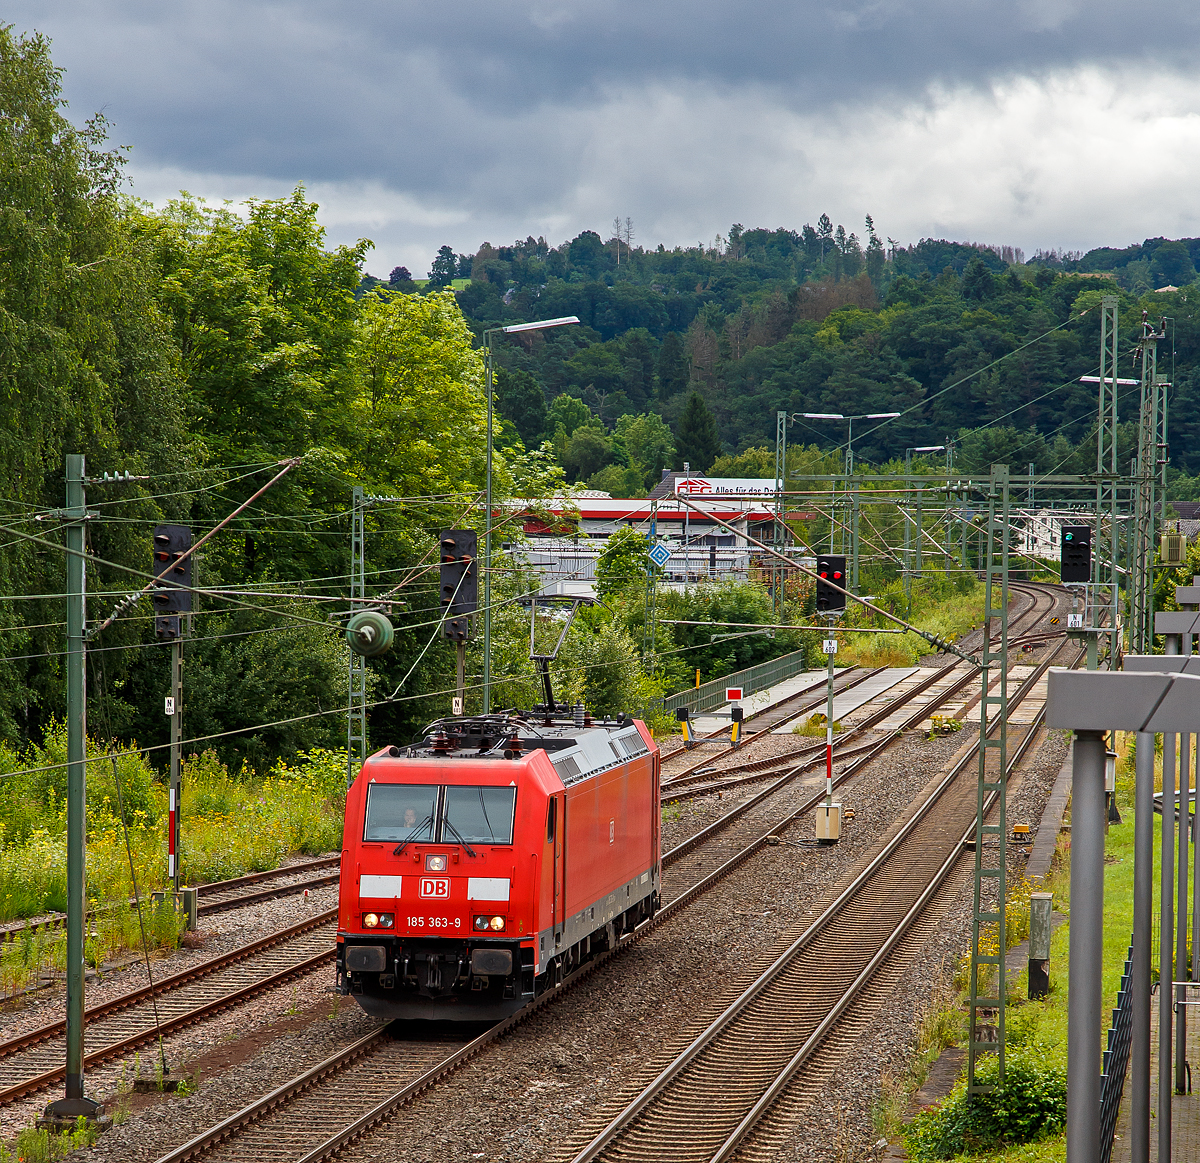 Die 185 363-9 (91 80 6185 363-3 D-DB) der DB Cargo Deutschland AG fährt am 15.07.2021 als Tfzf (Triebfahrzeugfahrt) bzw. Lz (Lokzug) durch Wissen (Sieg) in Richtung Köln. Aufgenommen vom Parkdeck des Bahnhofes Wissen (Sieg).

Die TRAXX F140 AC2 wurde 2009 von Bombardier in Kassel unter der Fabriknummer 34284 gebaut.
